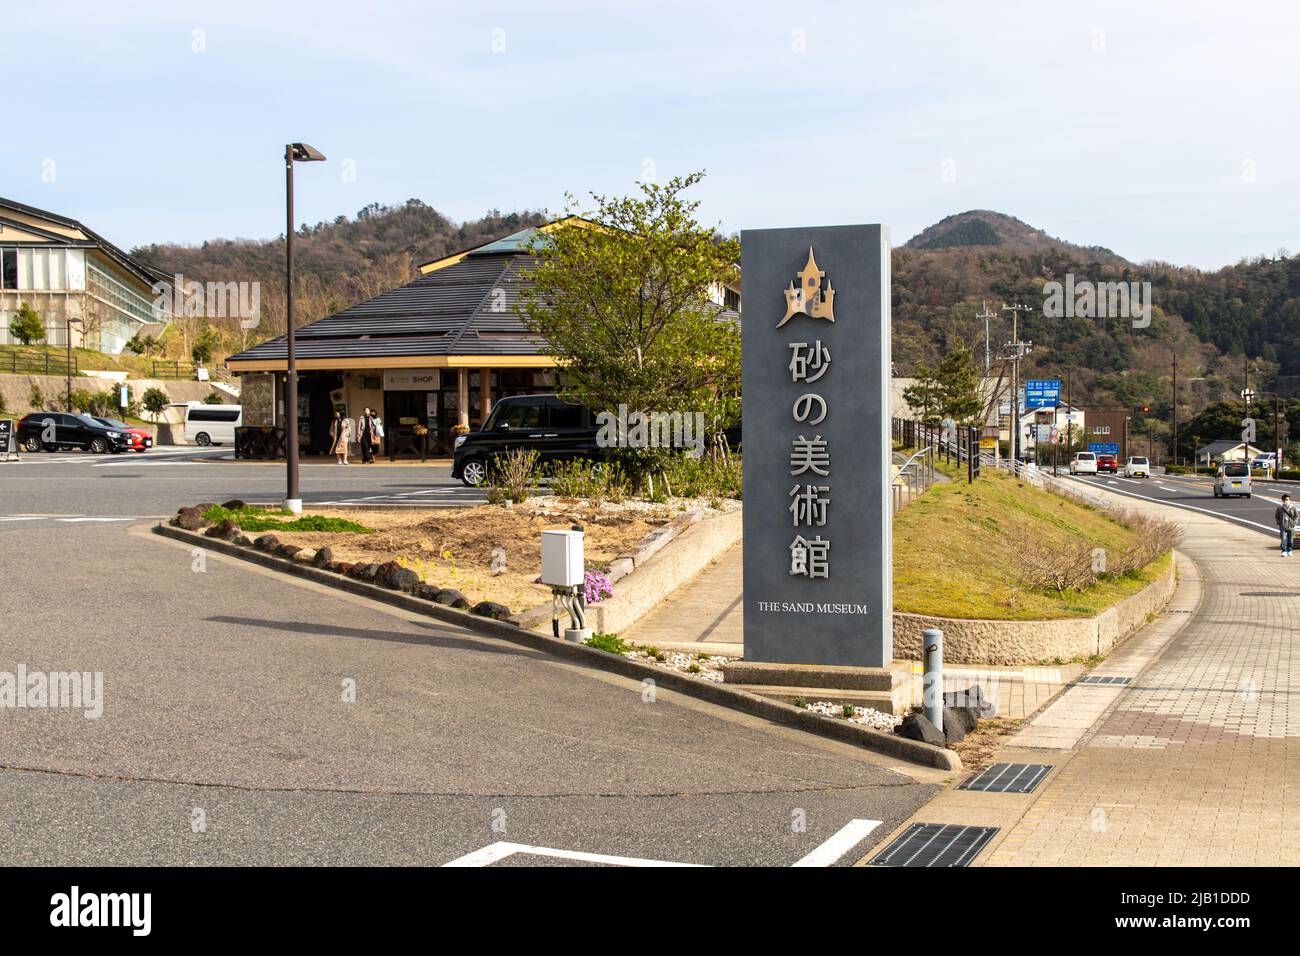 Tottori, JAPON - 1 2021 avril : le panneau d'entrée du musée du sable de Tottori, le musée intérieur a exposé des sculptures de sable du monde entier, en soirée Banque D'Images